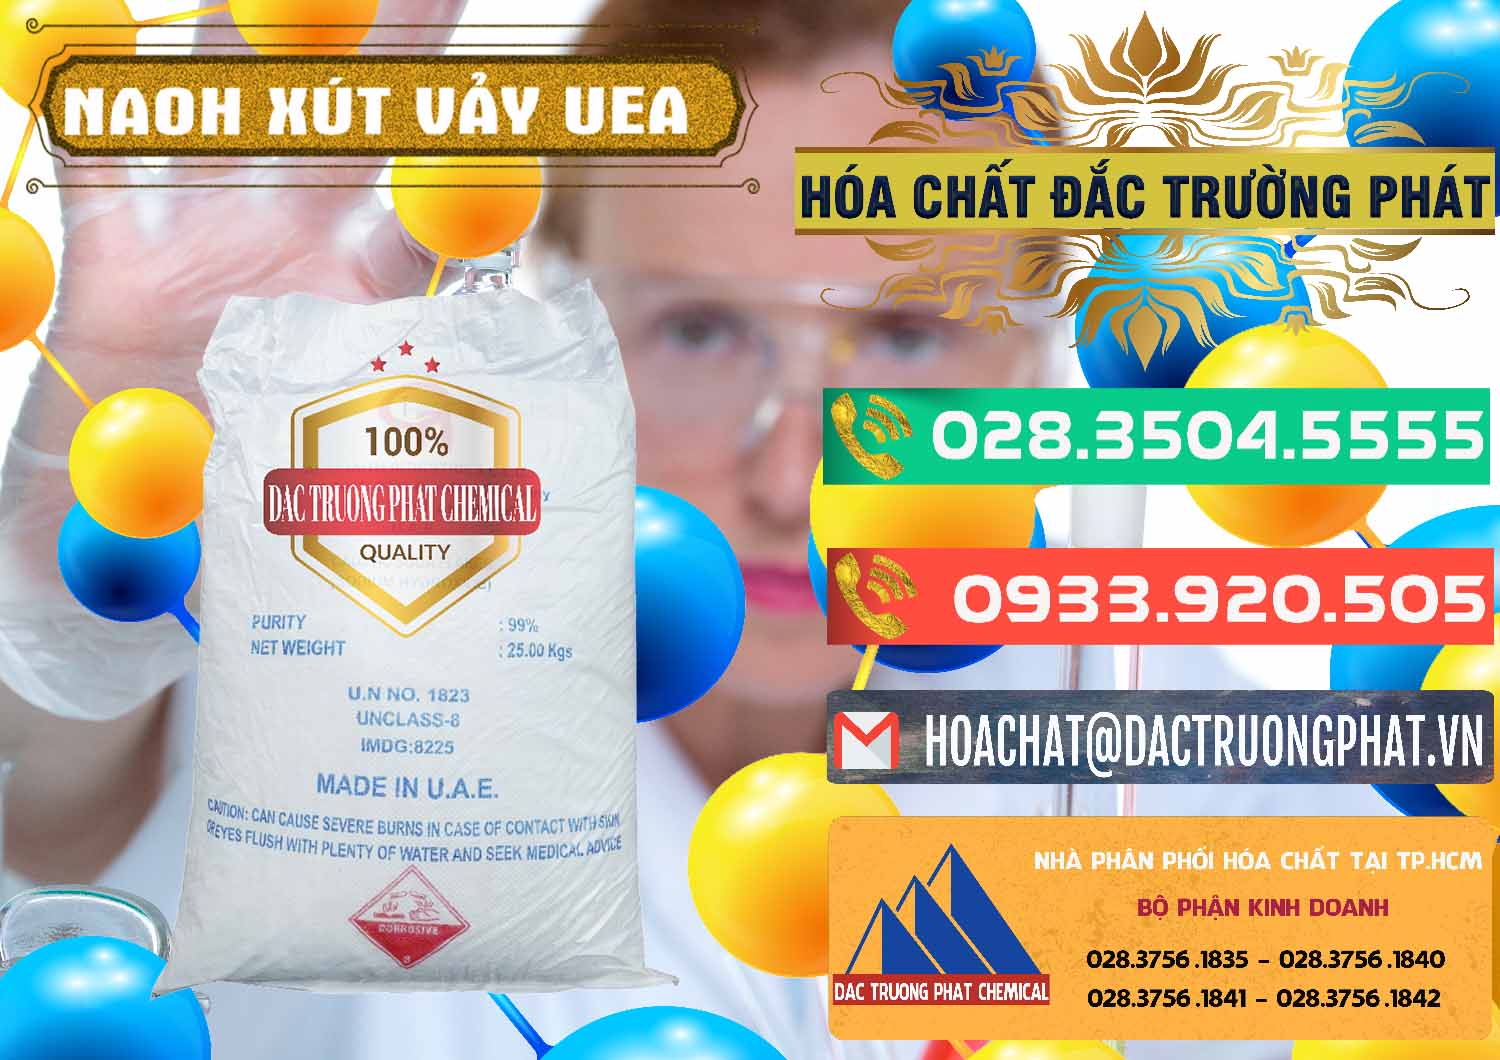 Cty chuyên bán và cung cấp Xút Vảy - NaOH Vảy UAE Iran - 0432 - Nhà cung ứng _ phân phối hóa chất tại TP.HCM - congtyhoachat.com.vn